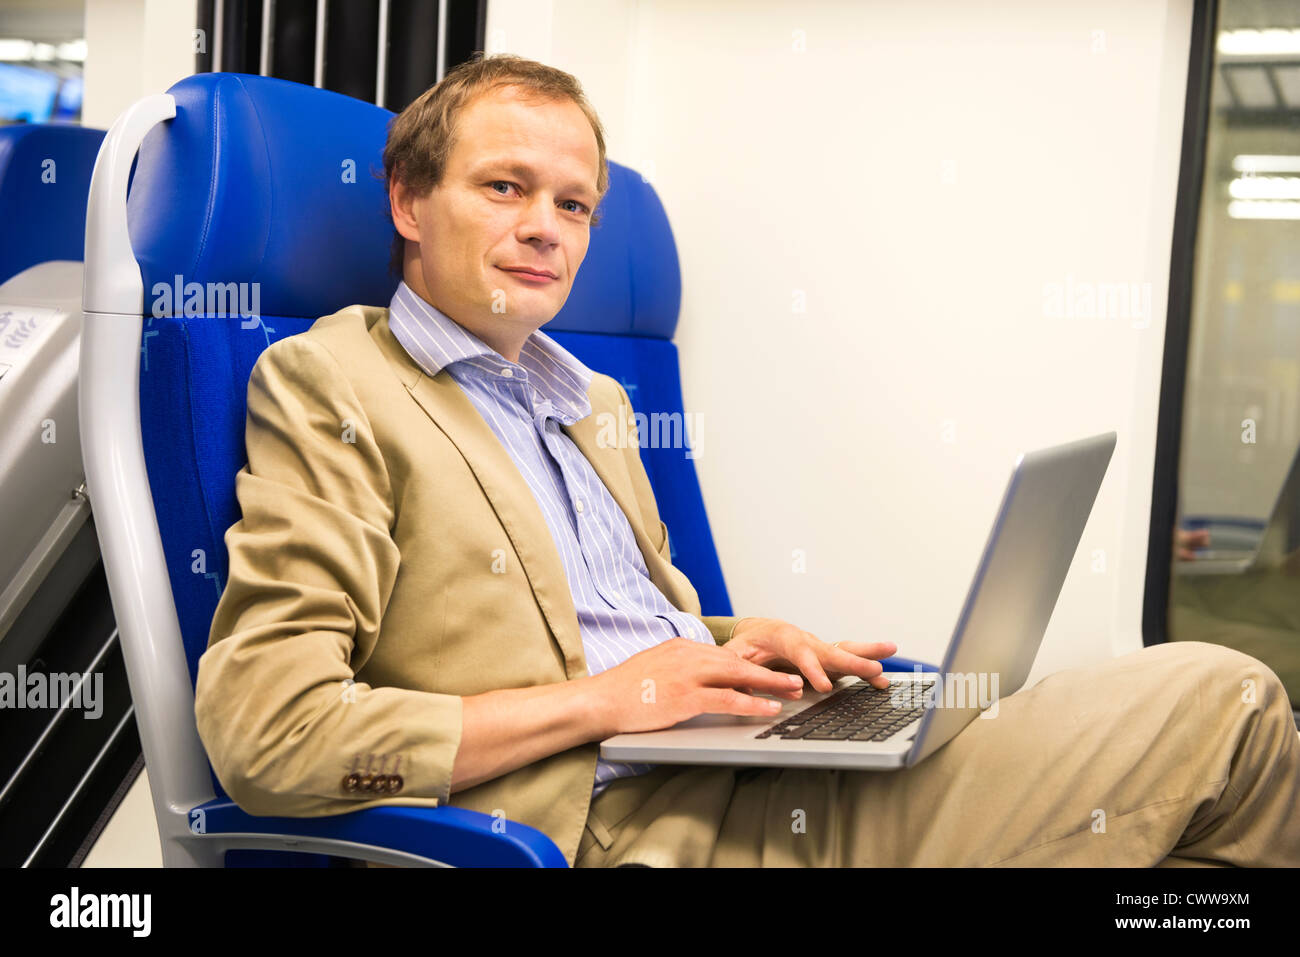 L'uomo, che indossa un abito senza cravatta è lavorare in un treno, guardando verso l'alto dal suo computer portatile Foto Stock